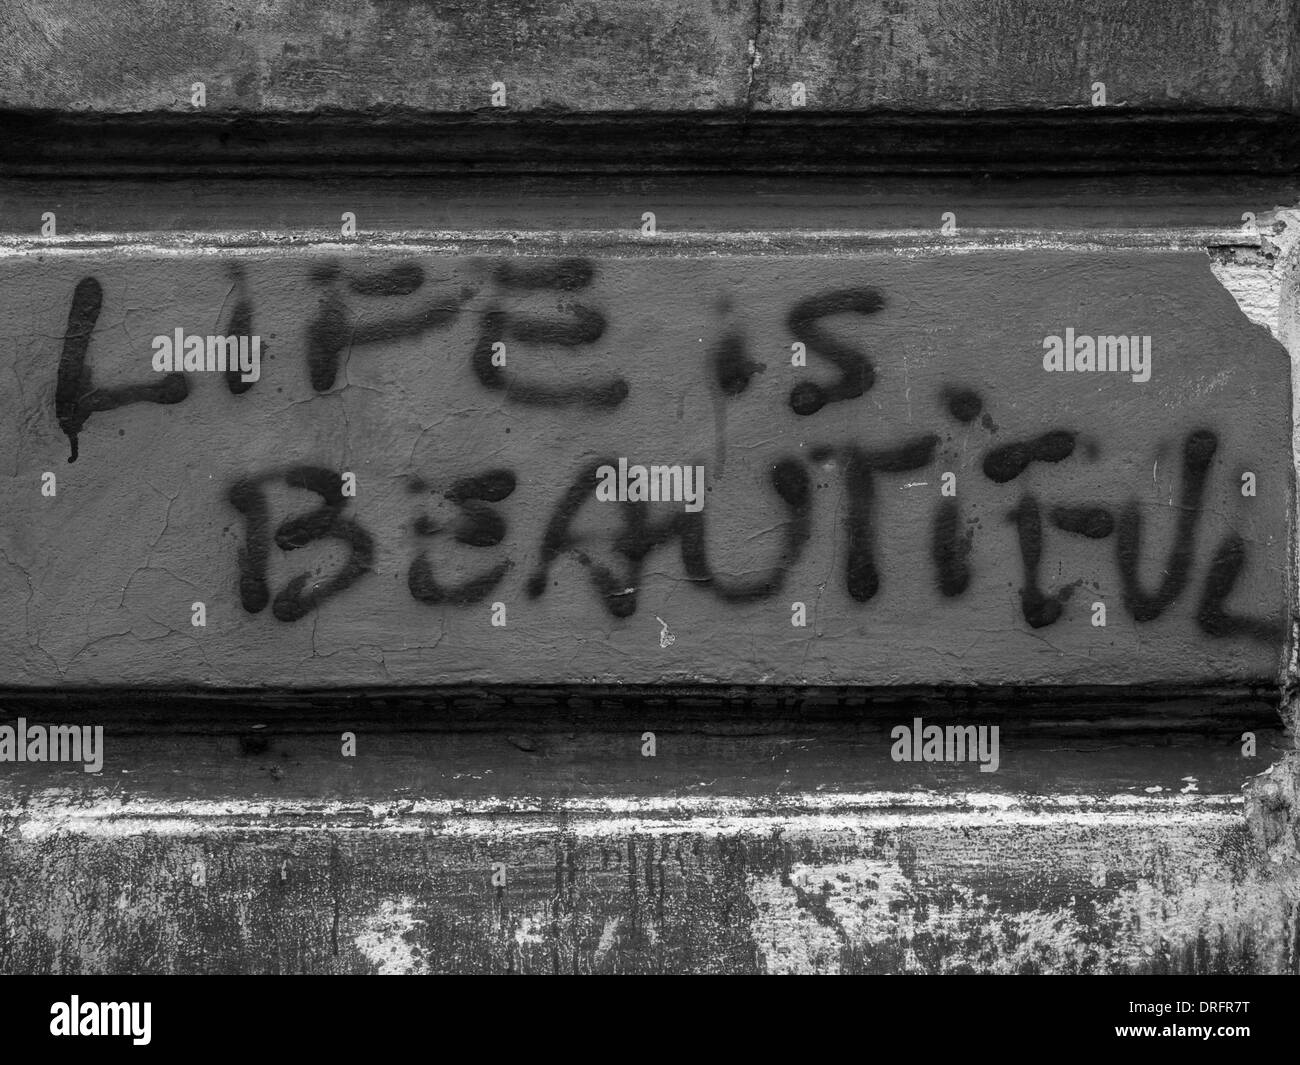 Graffitis sur les rues de Cracovie, en Pologne, affirmant "la vie est belle" Banque D'Images